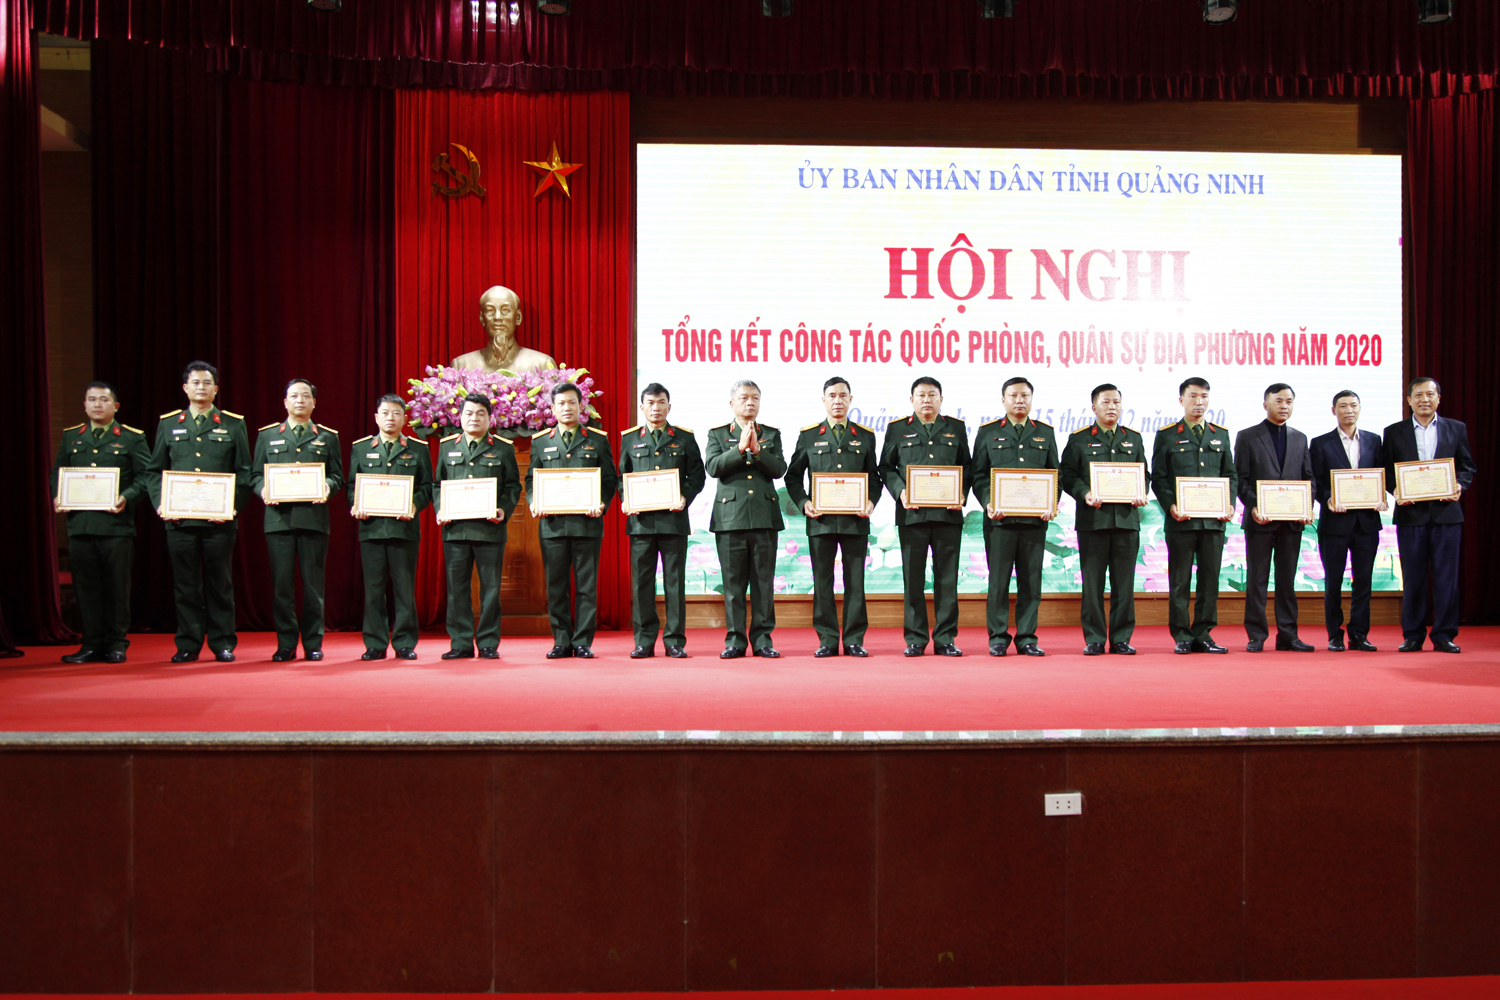 Thiếu tướng Nguyễn Quang Ngọc, Phó Bí thư Đảng ủy, Tư lệnh Quân khu 3, trao bằng khen của Bộ Quốc phòng, Quân khu 3 cho các tập thể, cá nhân có thành tích xuất sắc.